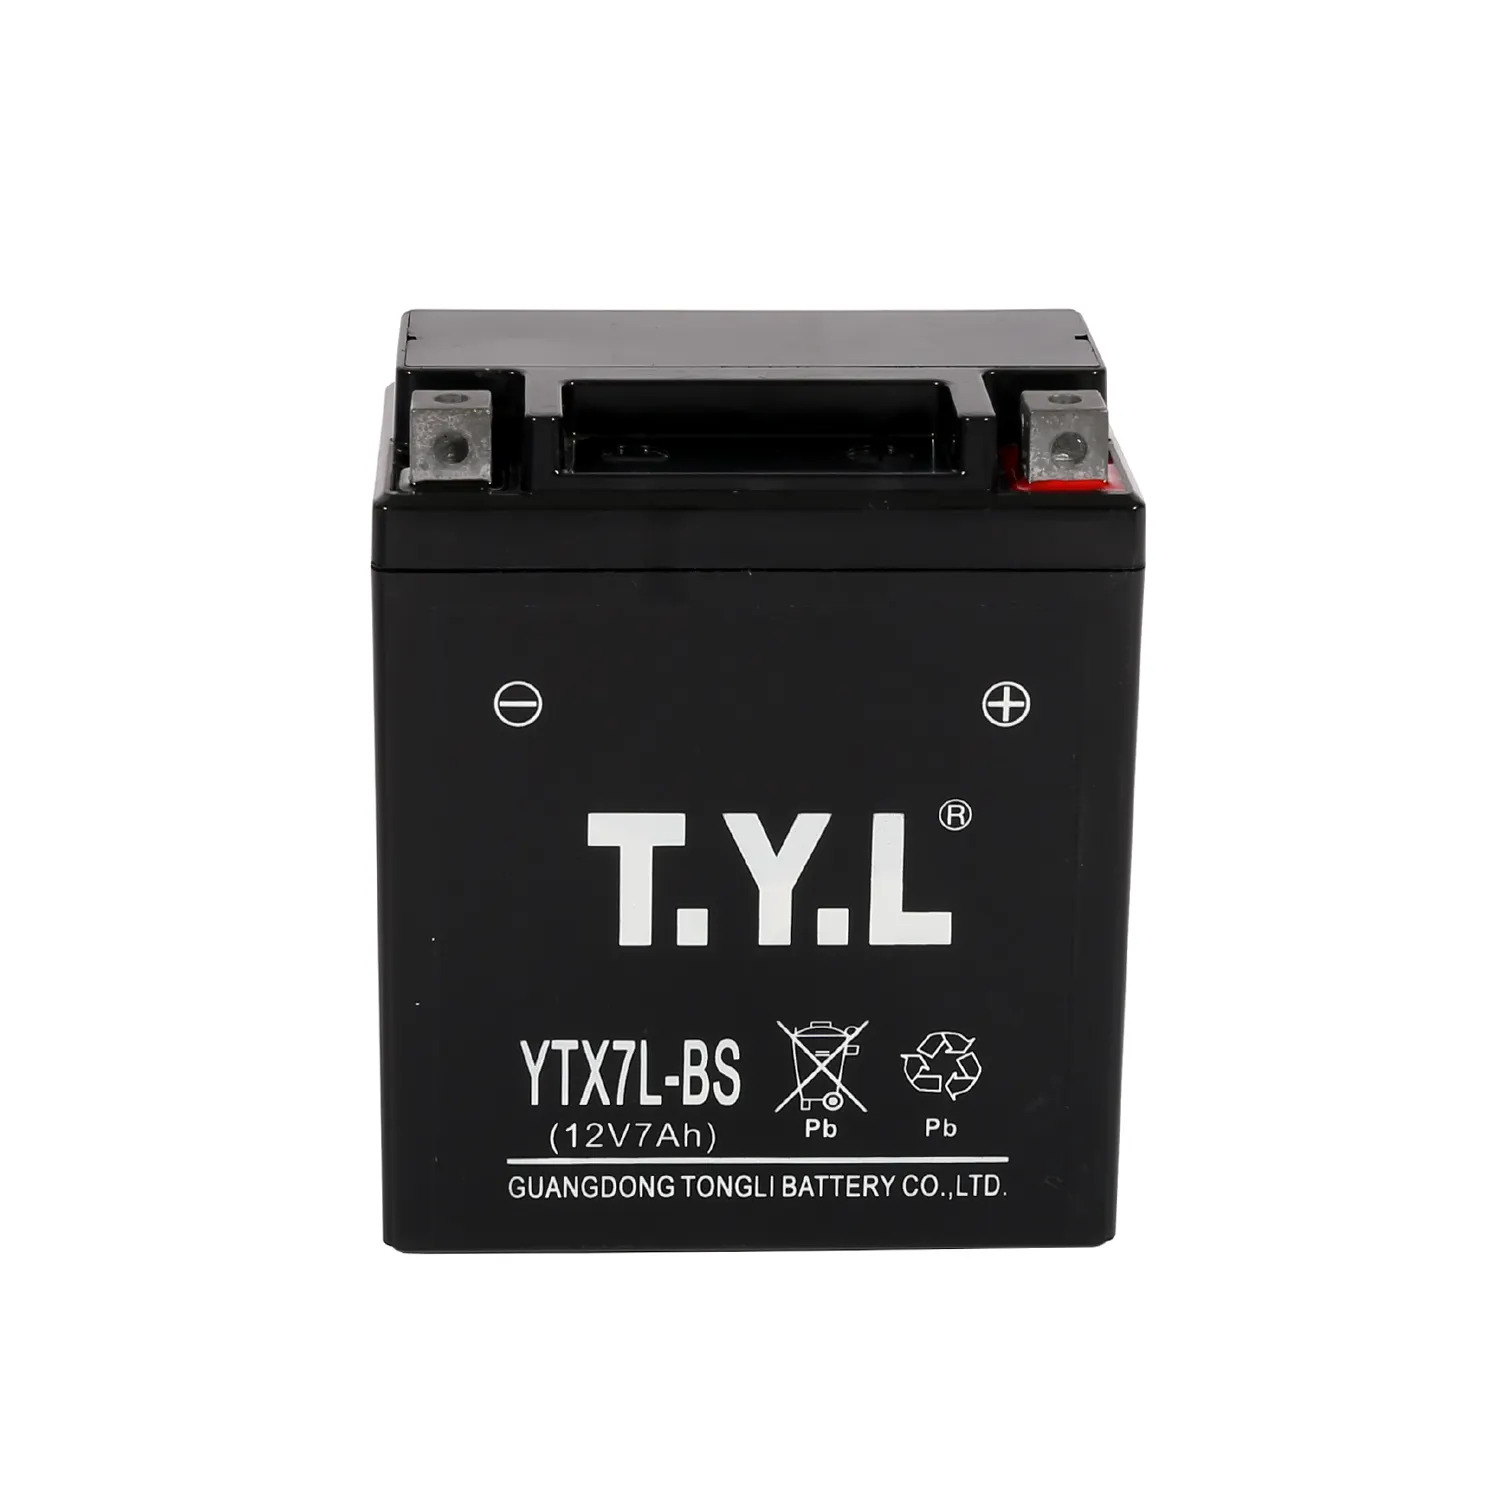 Fabricant chinois de batterie TYL, marque YTX7L-BS, 12v, 7ah, acide de plomb, batterie MF à charge humide pour moto